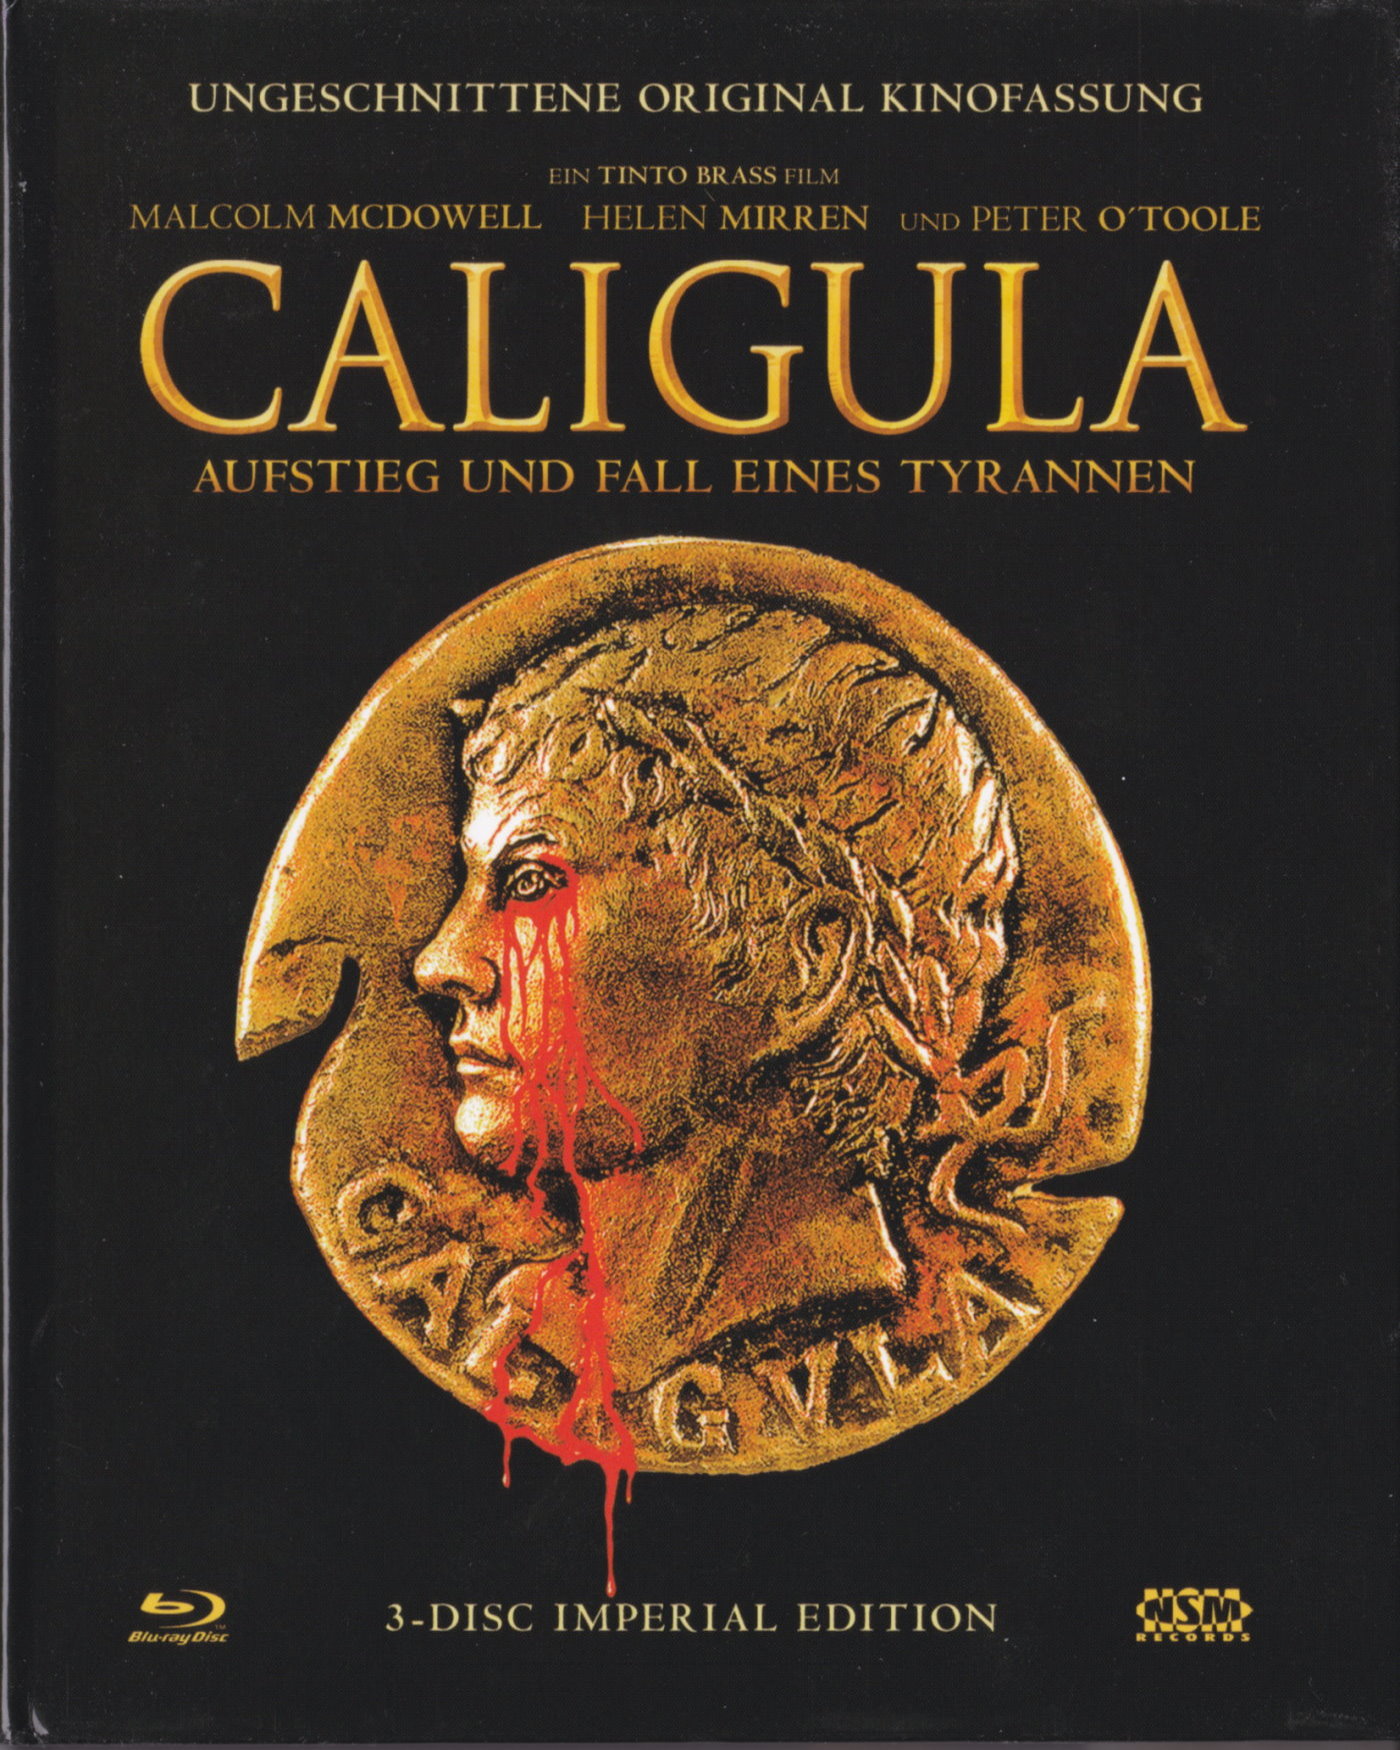 Cover - Caligula - Aufstieg und Fall eines Tyrannen.jpg